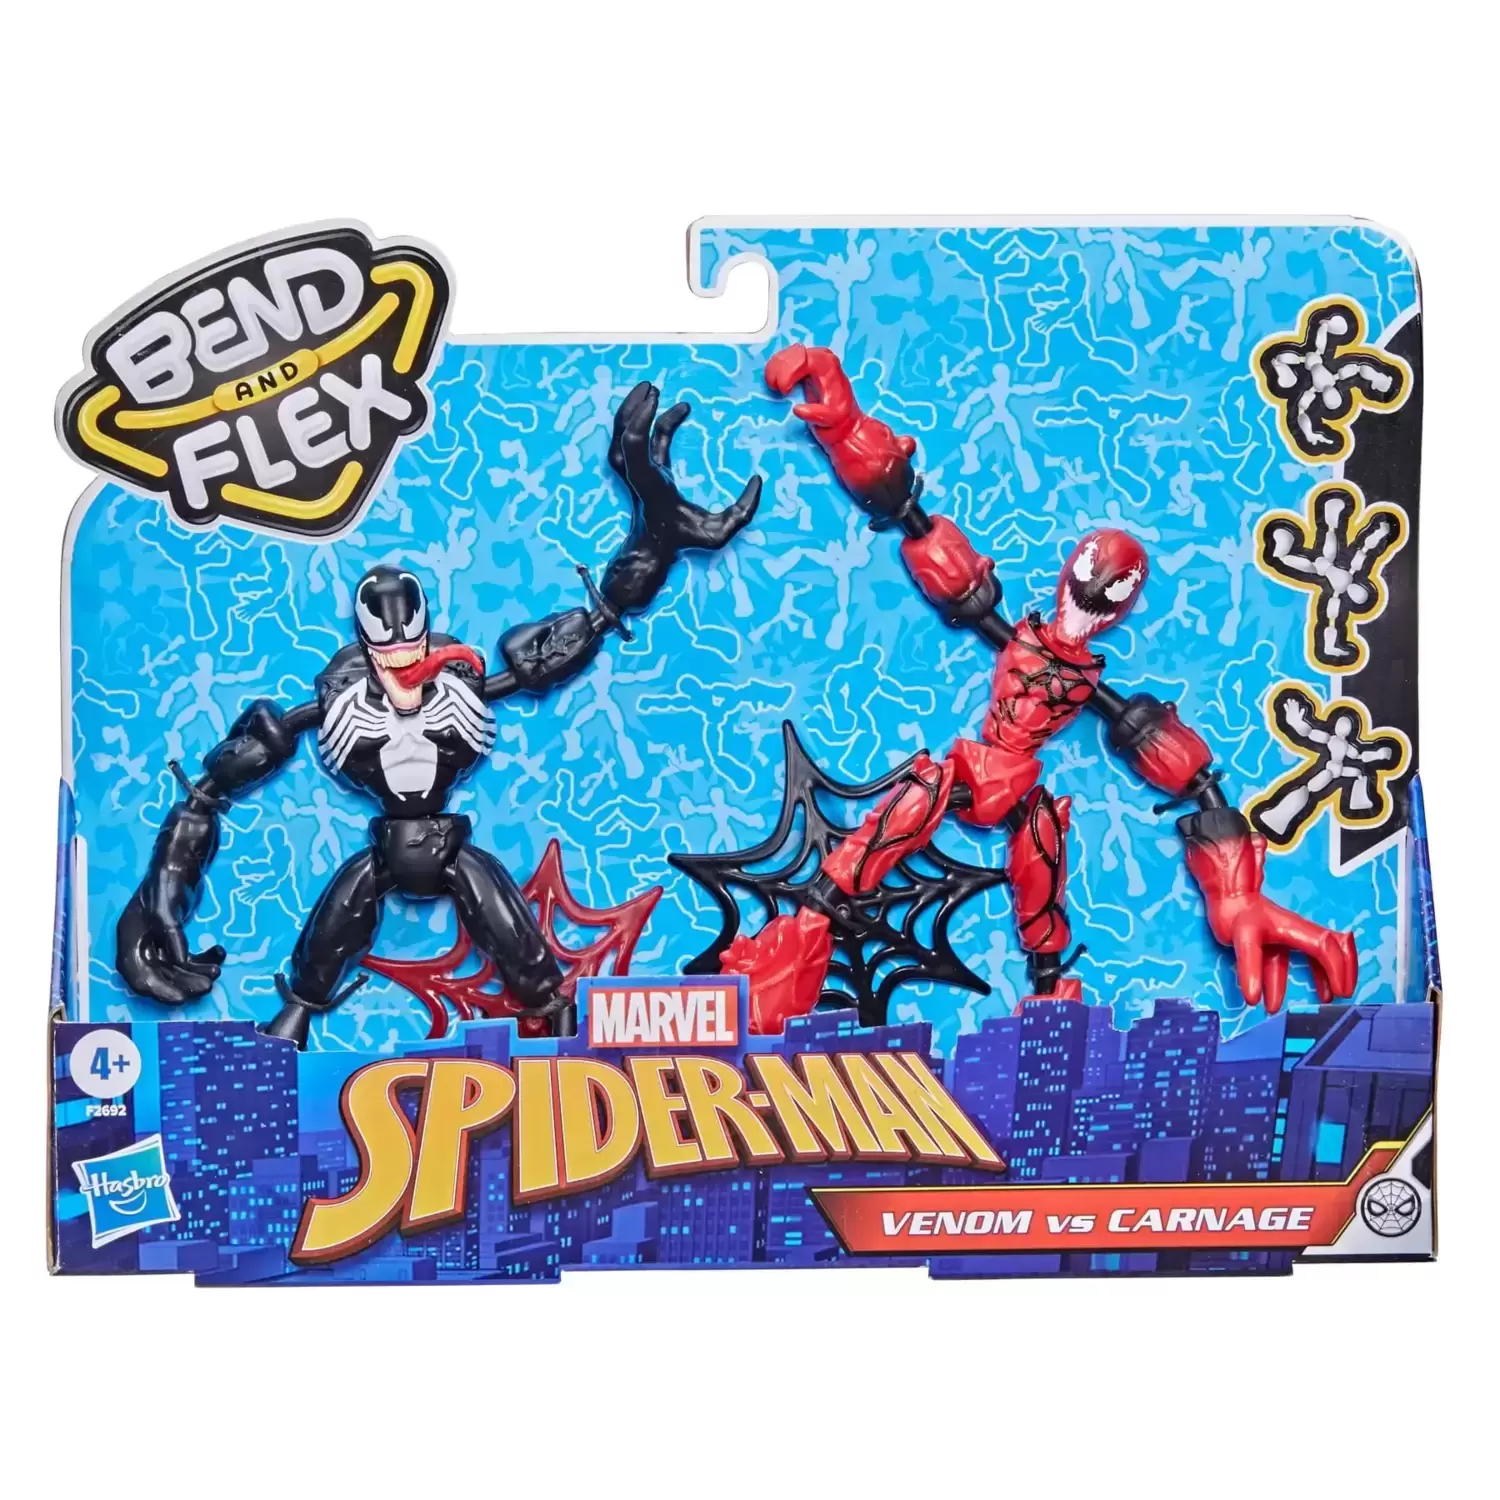 Marvel Bend and Flex Action Figures - Venom vs. Carnage